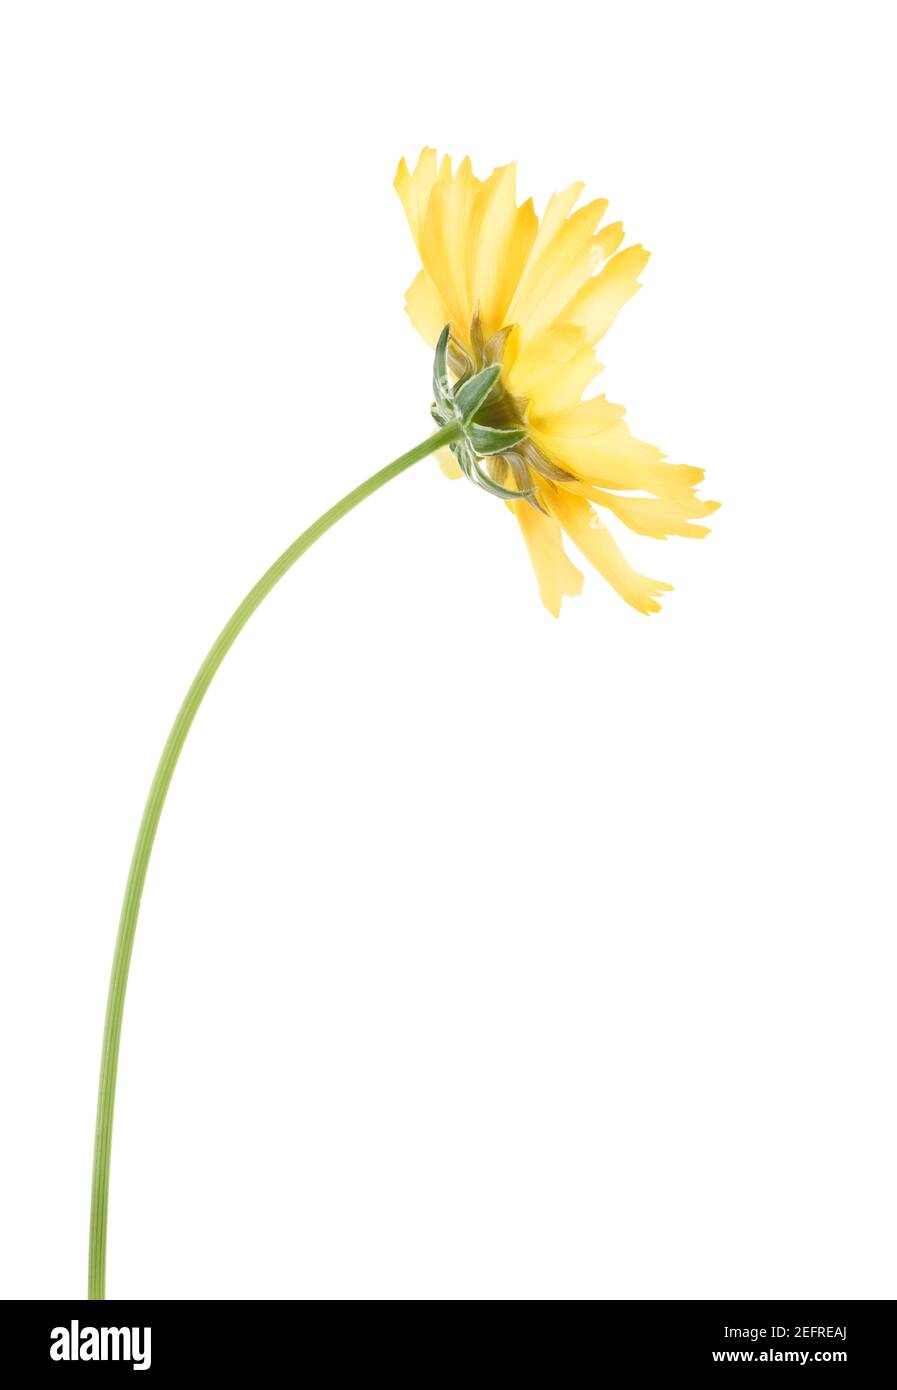 Fleur Cosmos jaune sur une tige, vue latérale. Sulphur Cosmos, Sulphur Cosmos, Aster mexicain, fleur jaune en forme de pâquerette. Gros plan artistique isolé sur blanc Banque D'Images